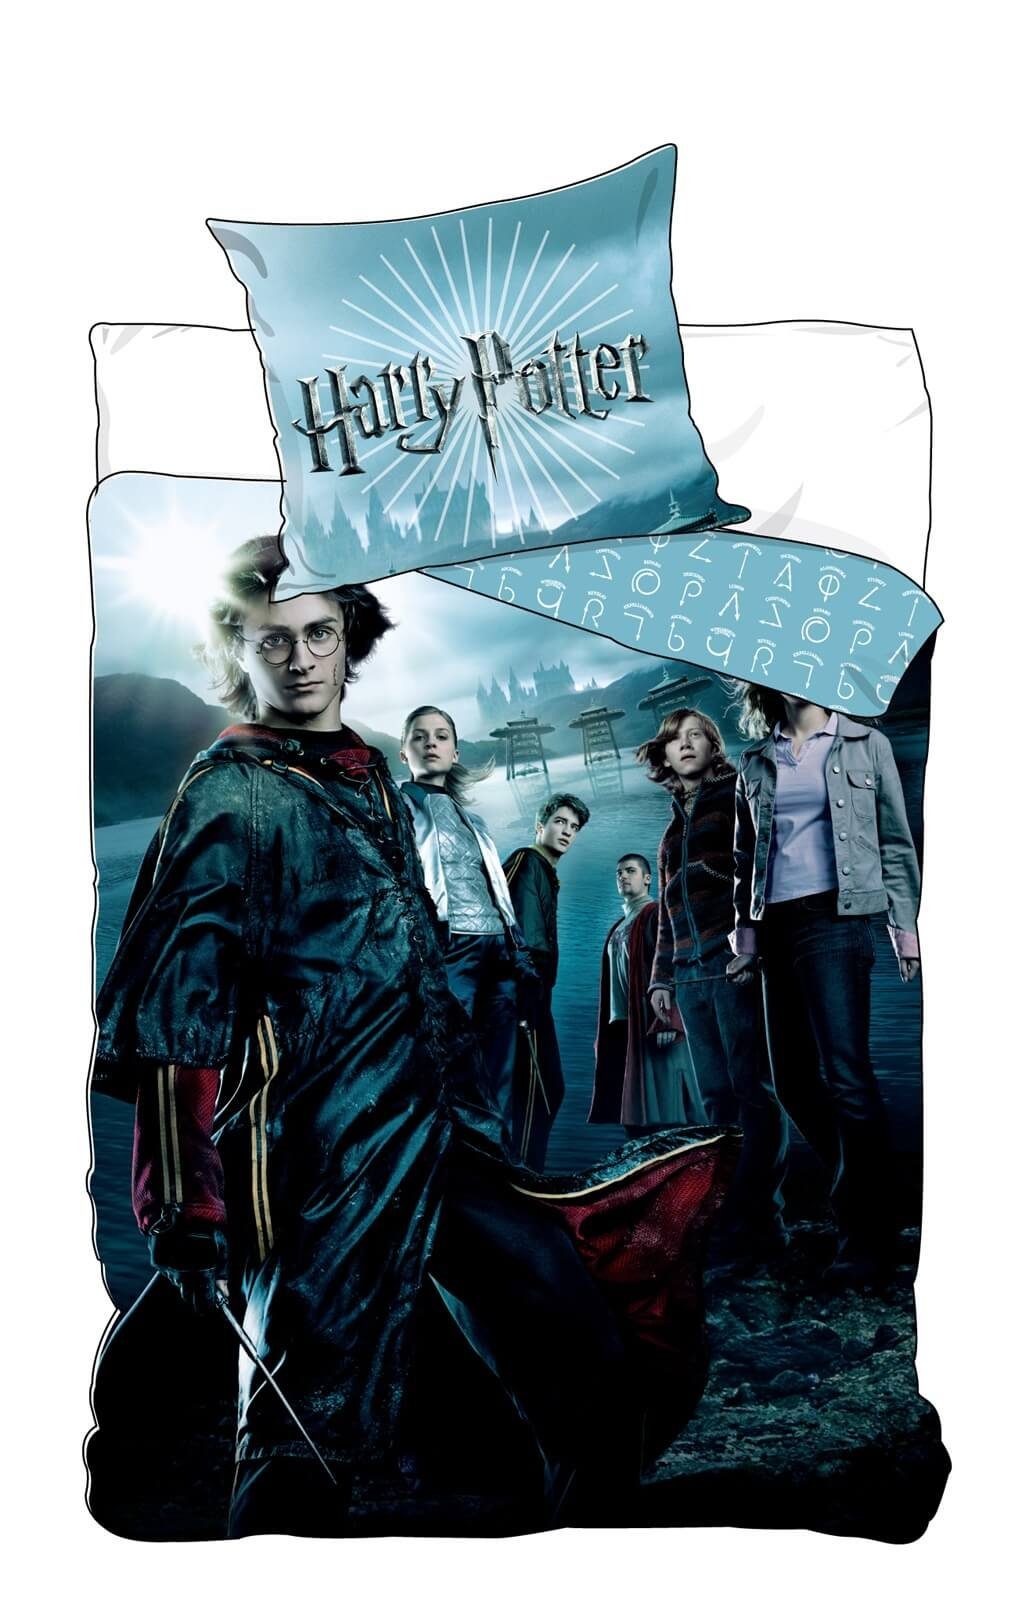 Bettwäsche Harry Potter und der Feuerkelch - Bettwäsche-Set, 135x200 & 80x80, Harry Potter, Baumwolle, 100% Baumwolle